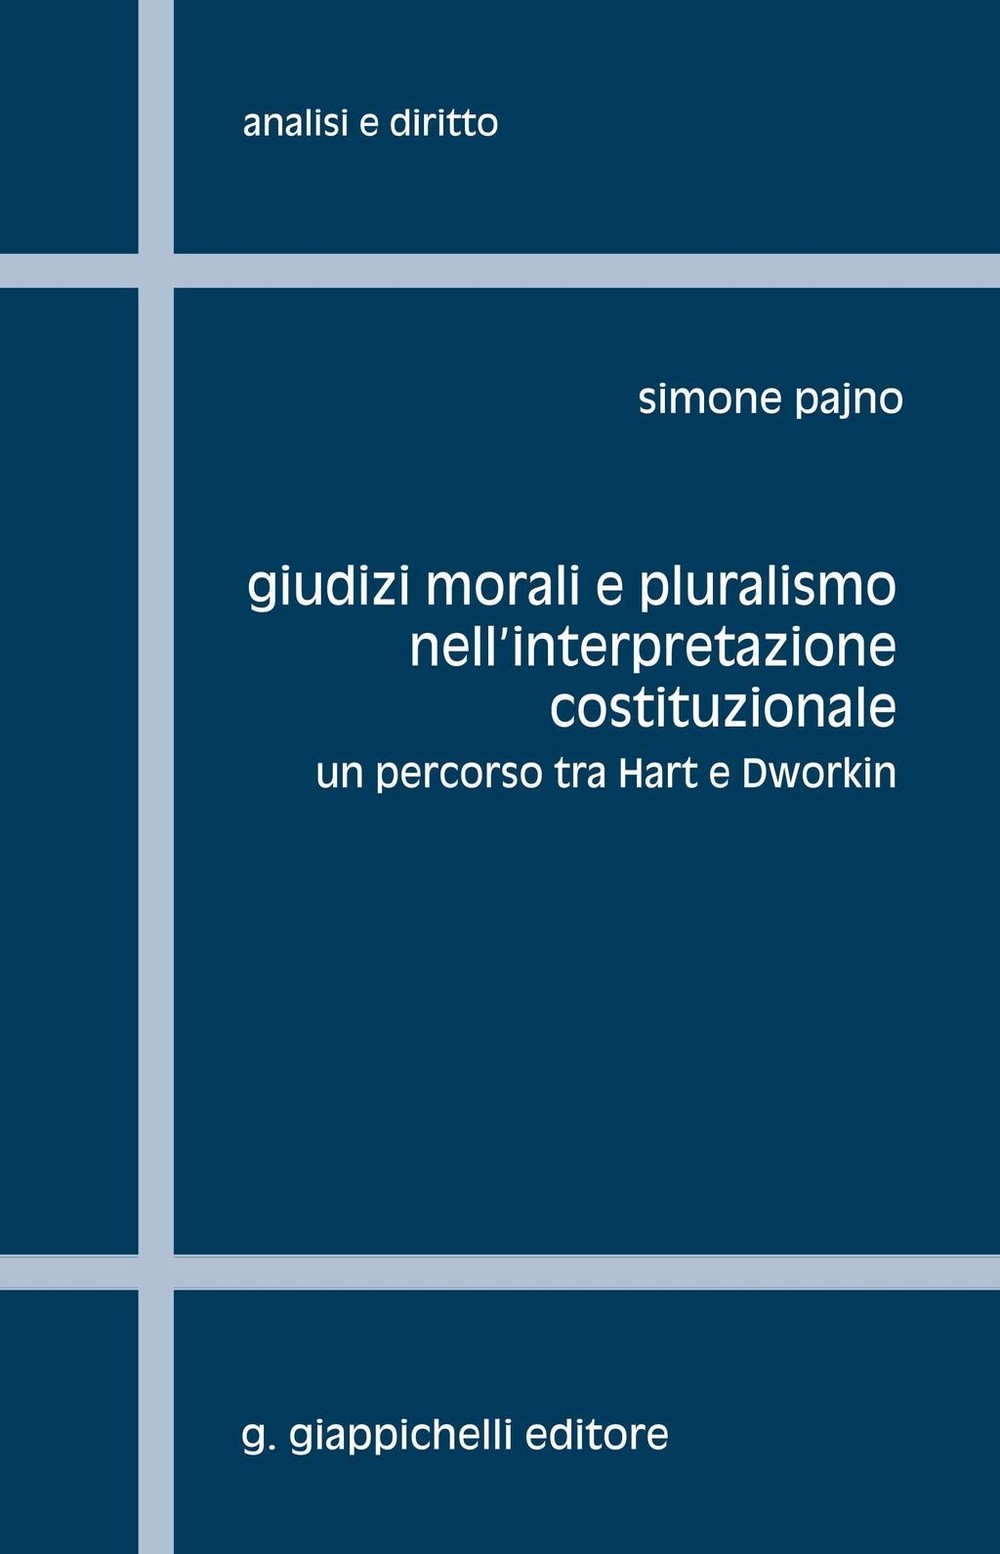 Giudizi morali e pluralismo nell'interpretazione costituzionale. - Librerie.coop